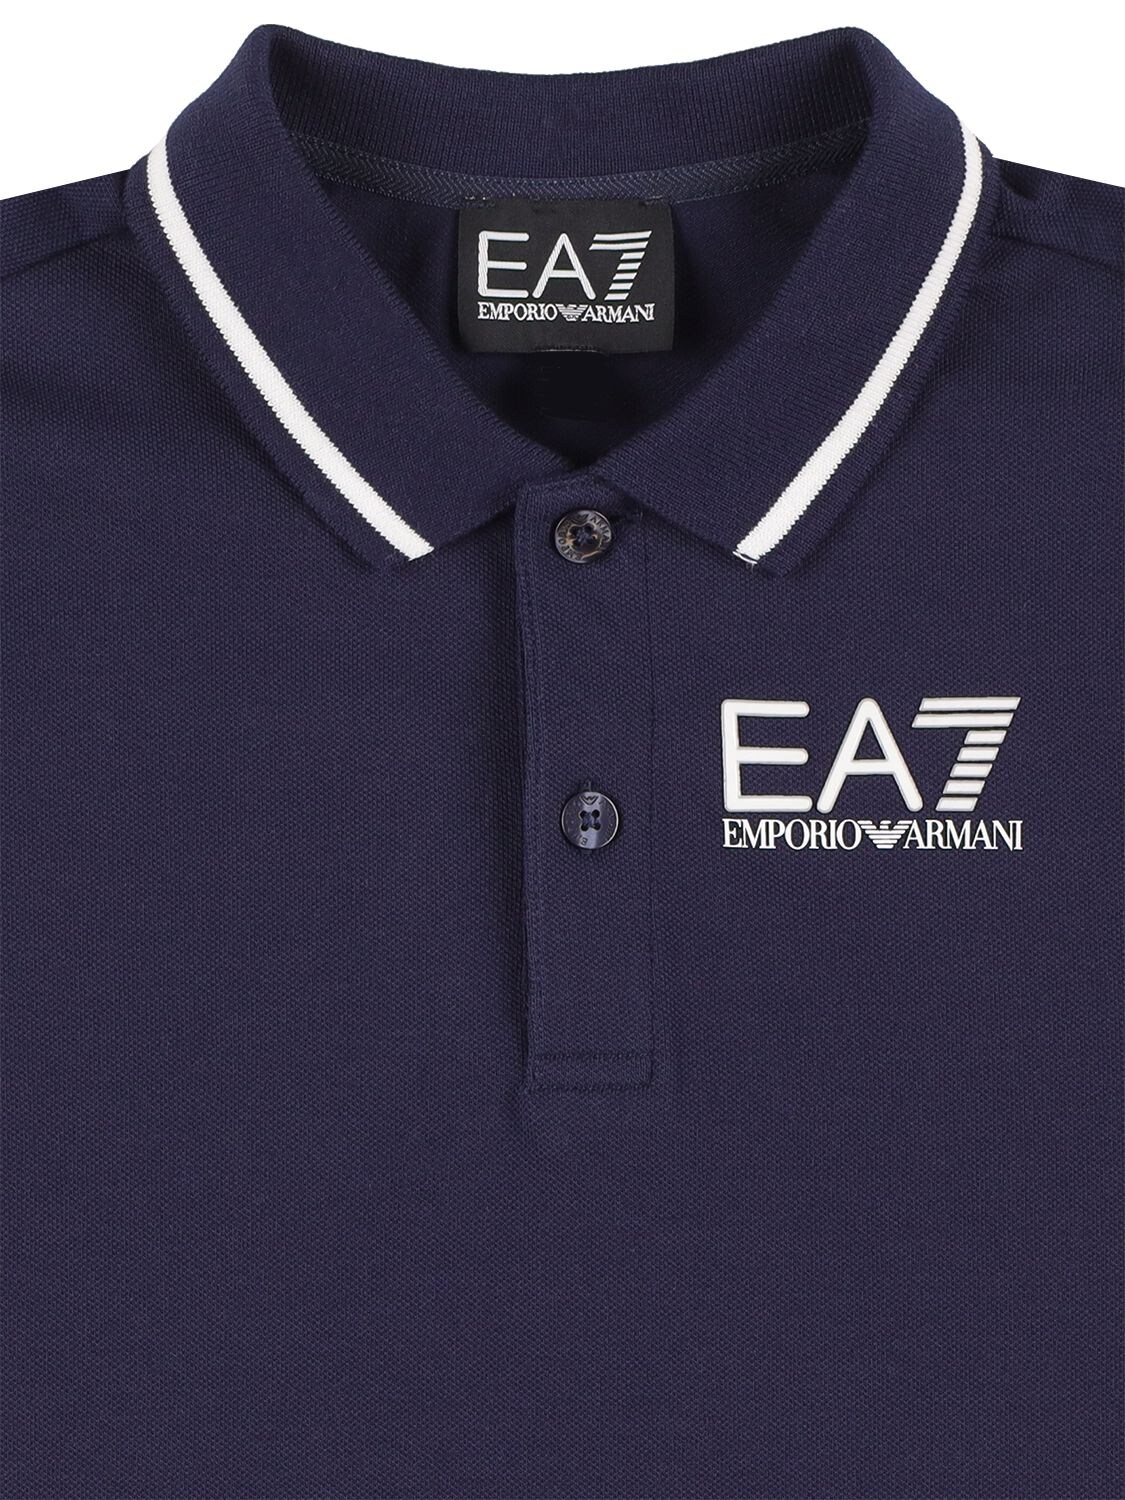 Ea7 Emporio Armani Teen Boys Blue Cotton Logo Polo Shirt In Navy